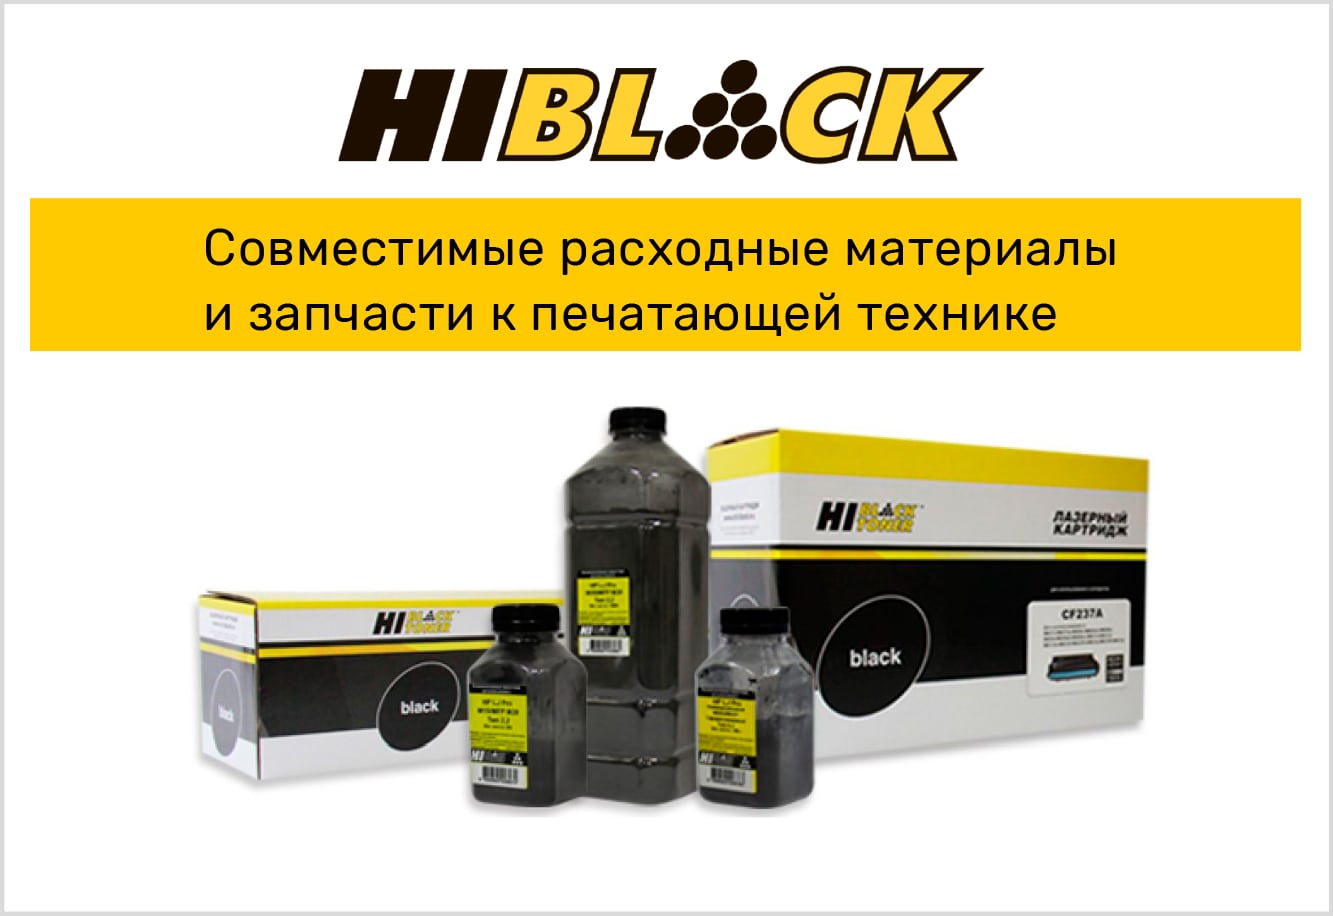 Драм-юнит Hi-Black (HB-DK-1150/1160/1170) для Kyocera ECOSYS M2040dn/M2135dn, Универс., 100К